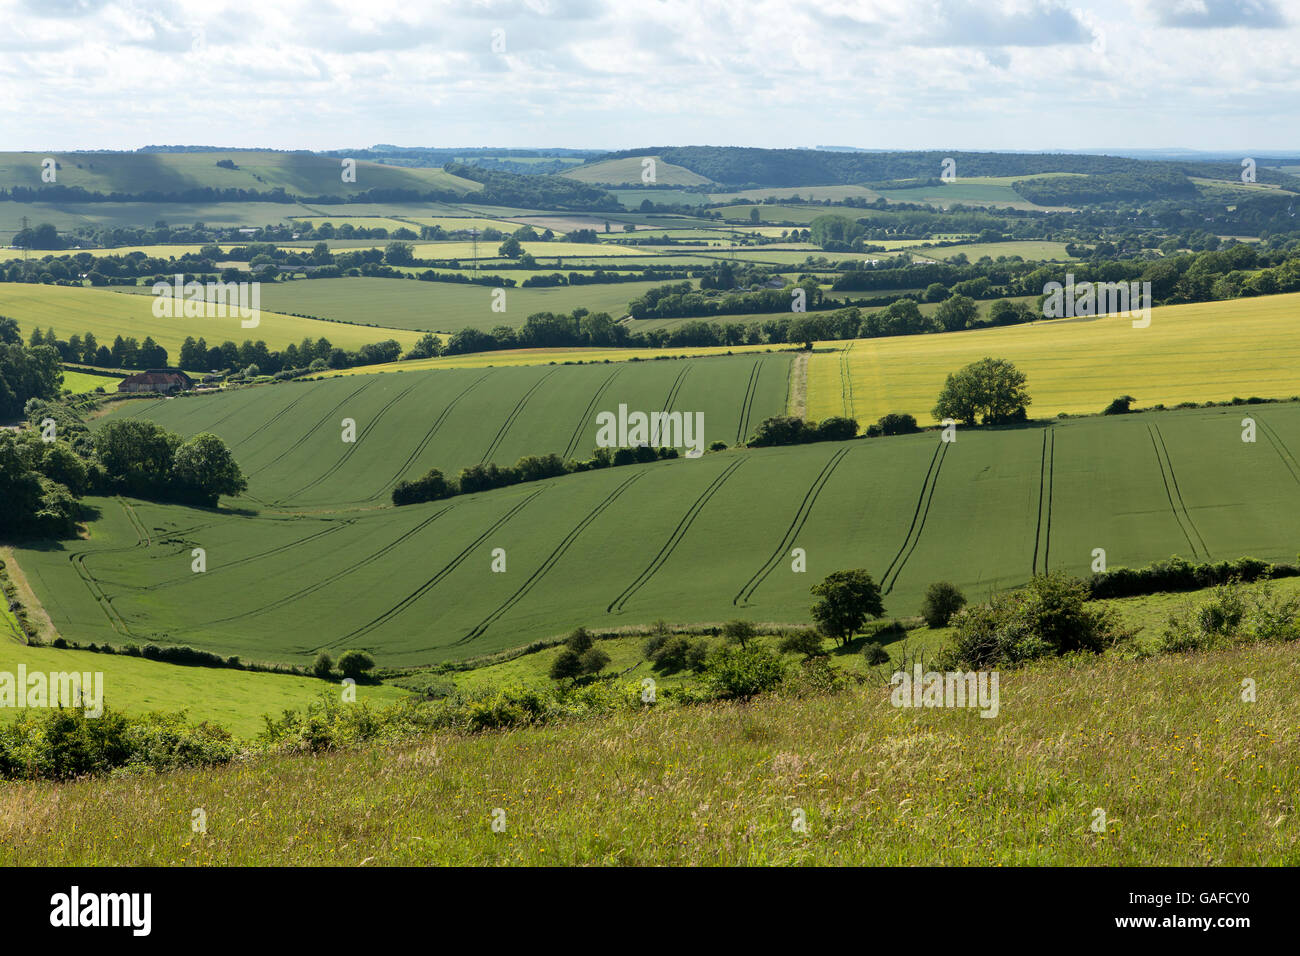 Geologische Besonderheit auf der South Downs in Hampshire, England. Grass bedeckt Pisten mit Ackerland, die Dehnung in die Ferne. Stockfoto